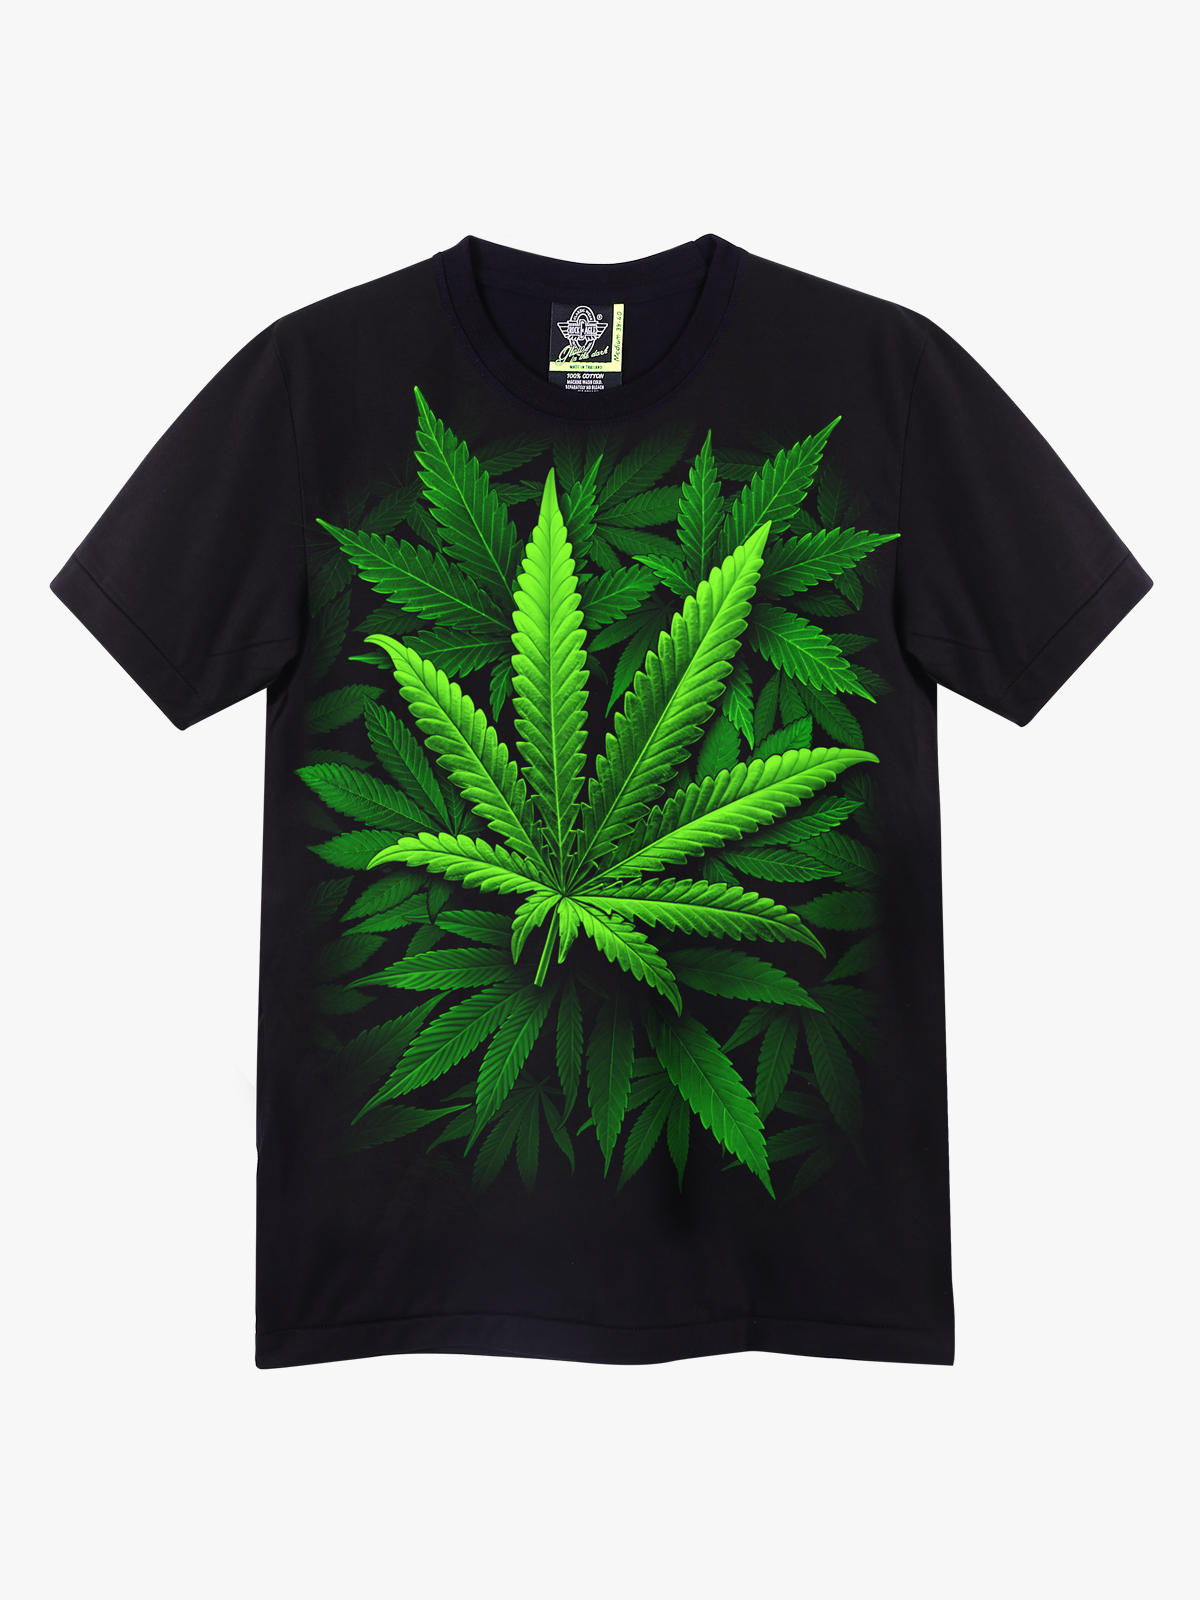 заказать футболку с марихуана